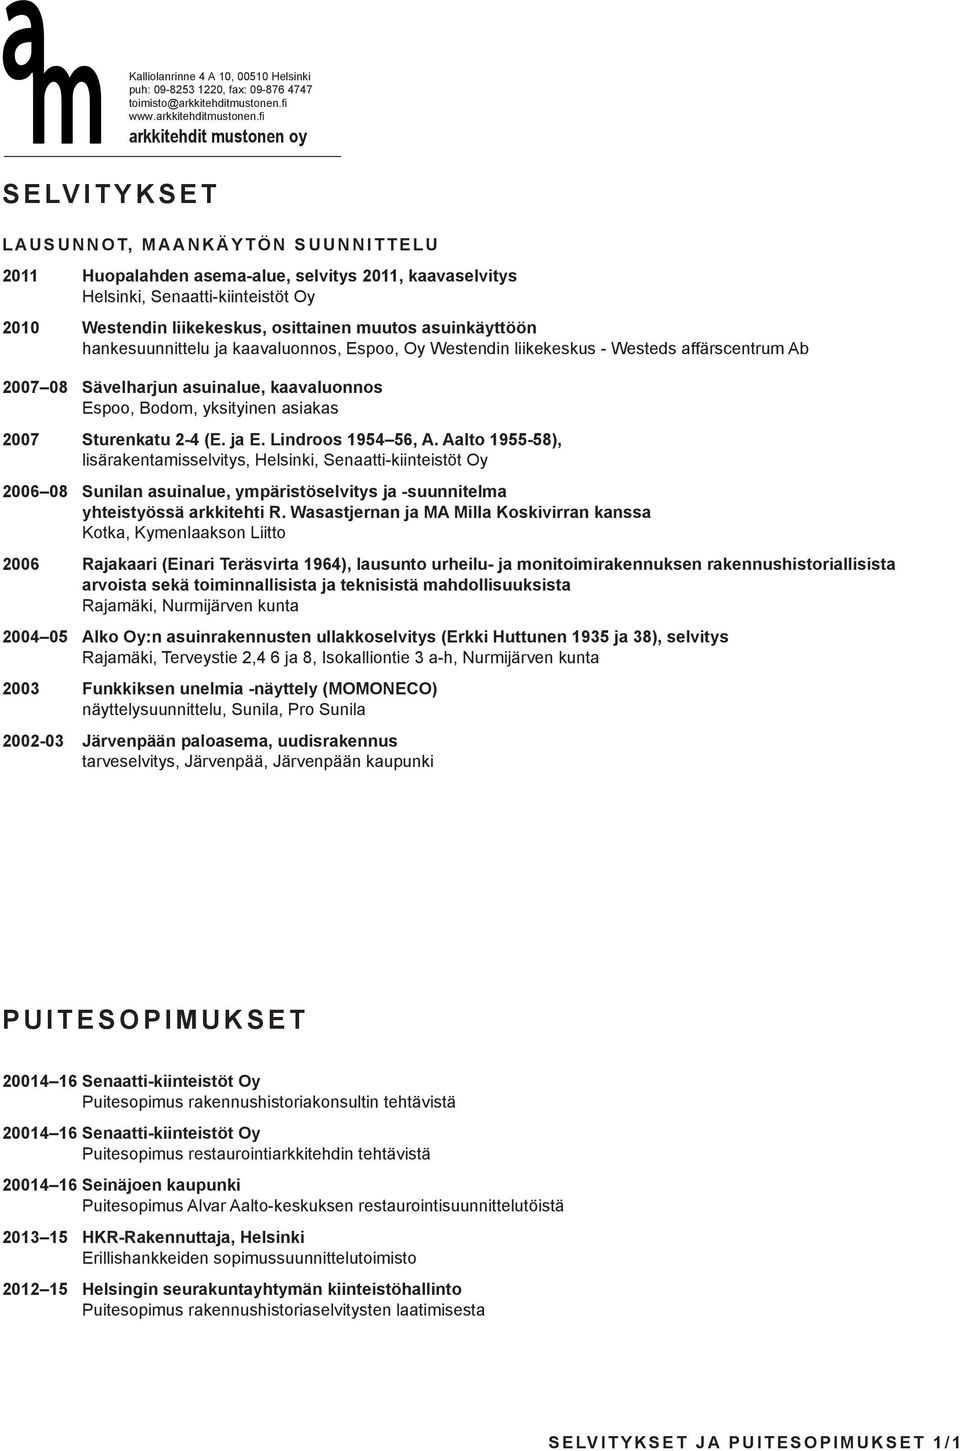 yksityinen asiakas 2007 Sturenkatu 2-4 (E. ja E. Lindroos 1954 56, A.